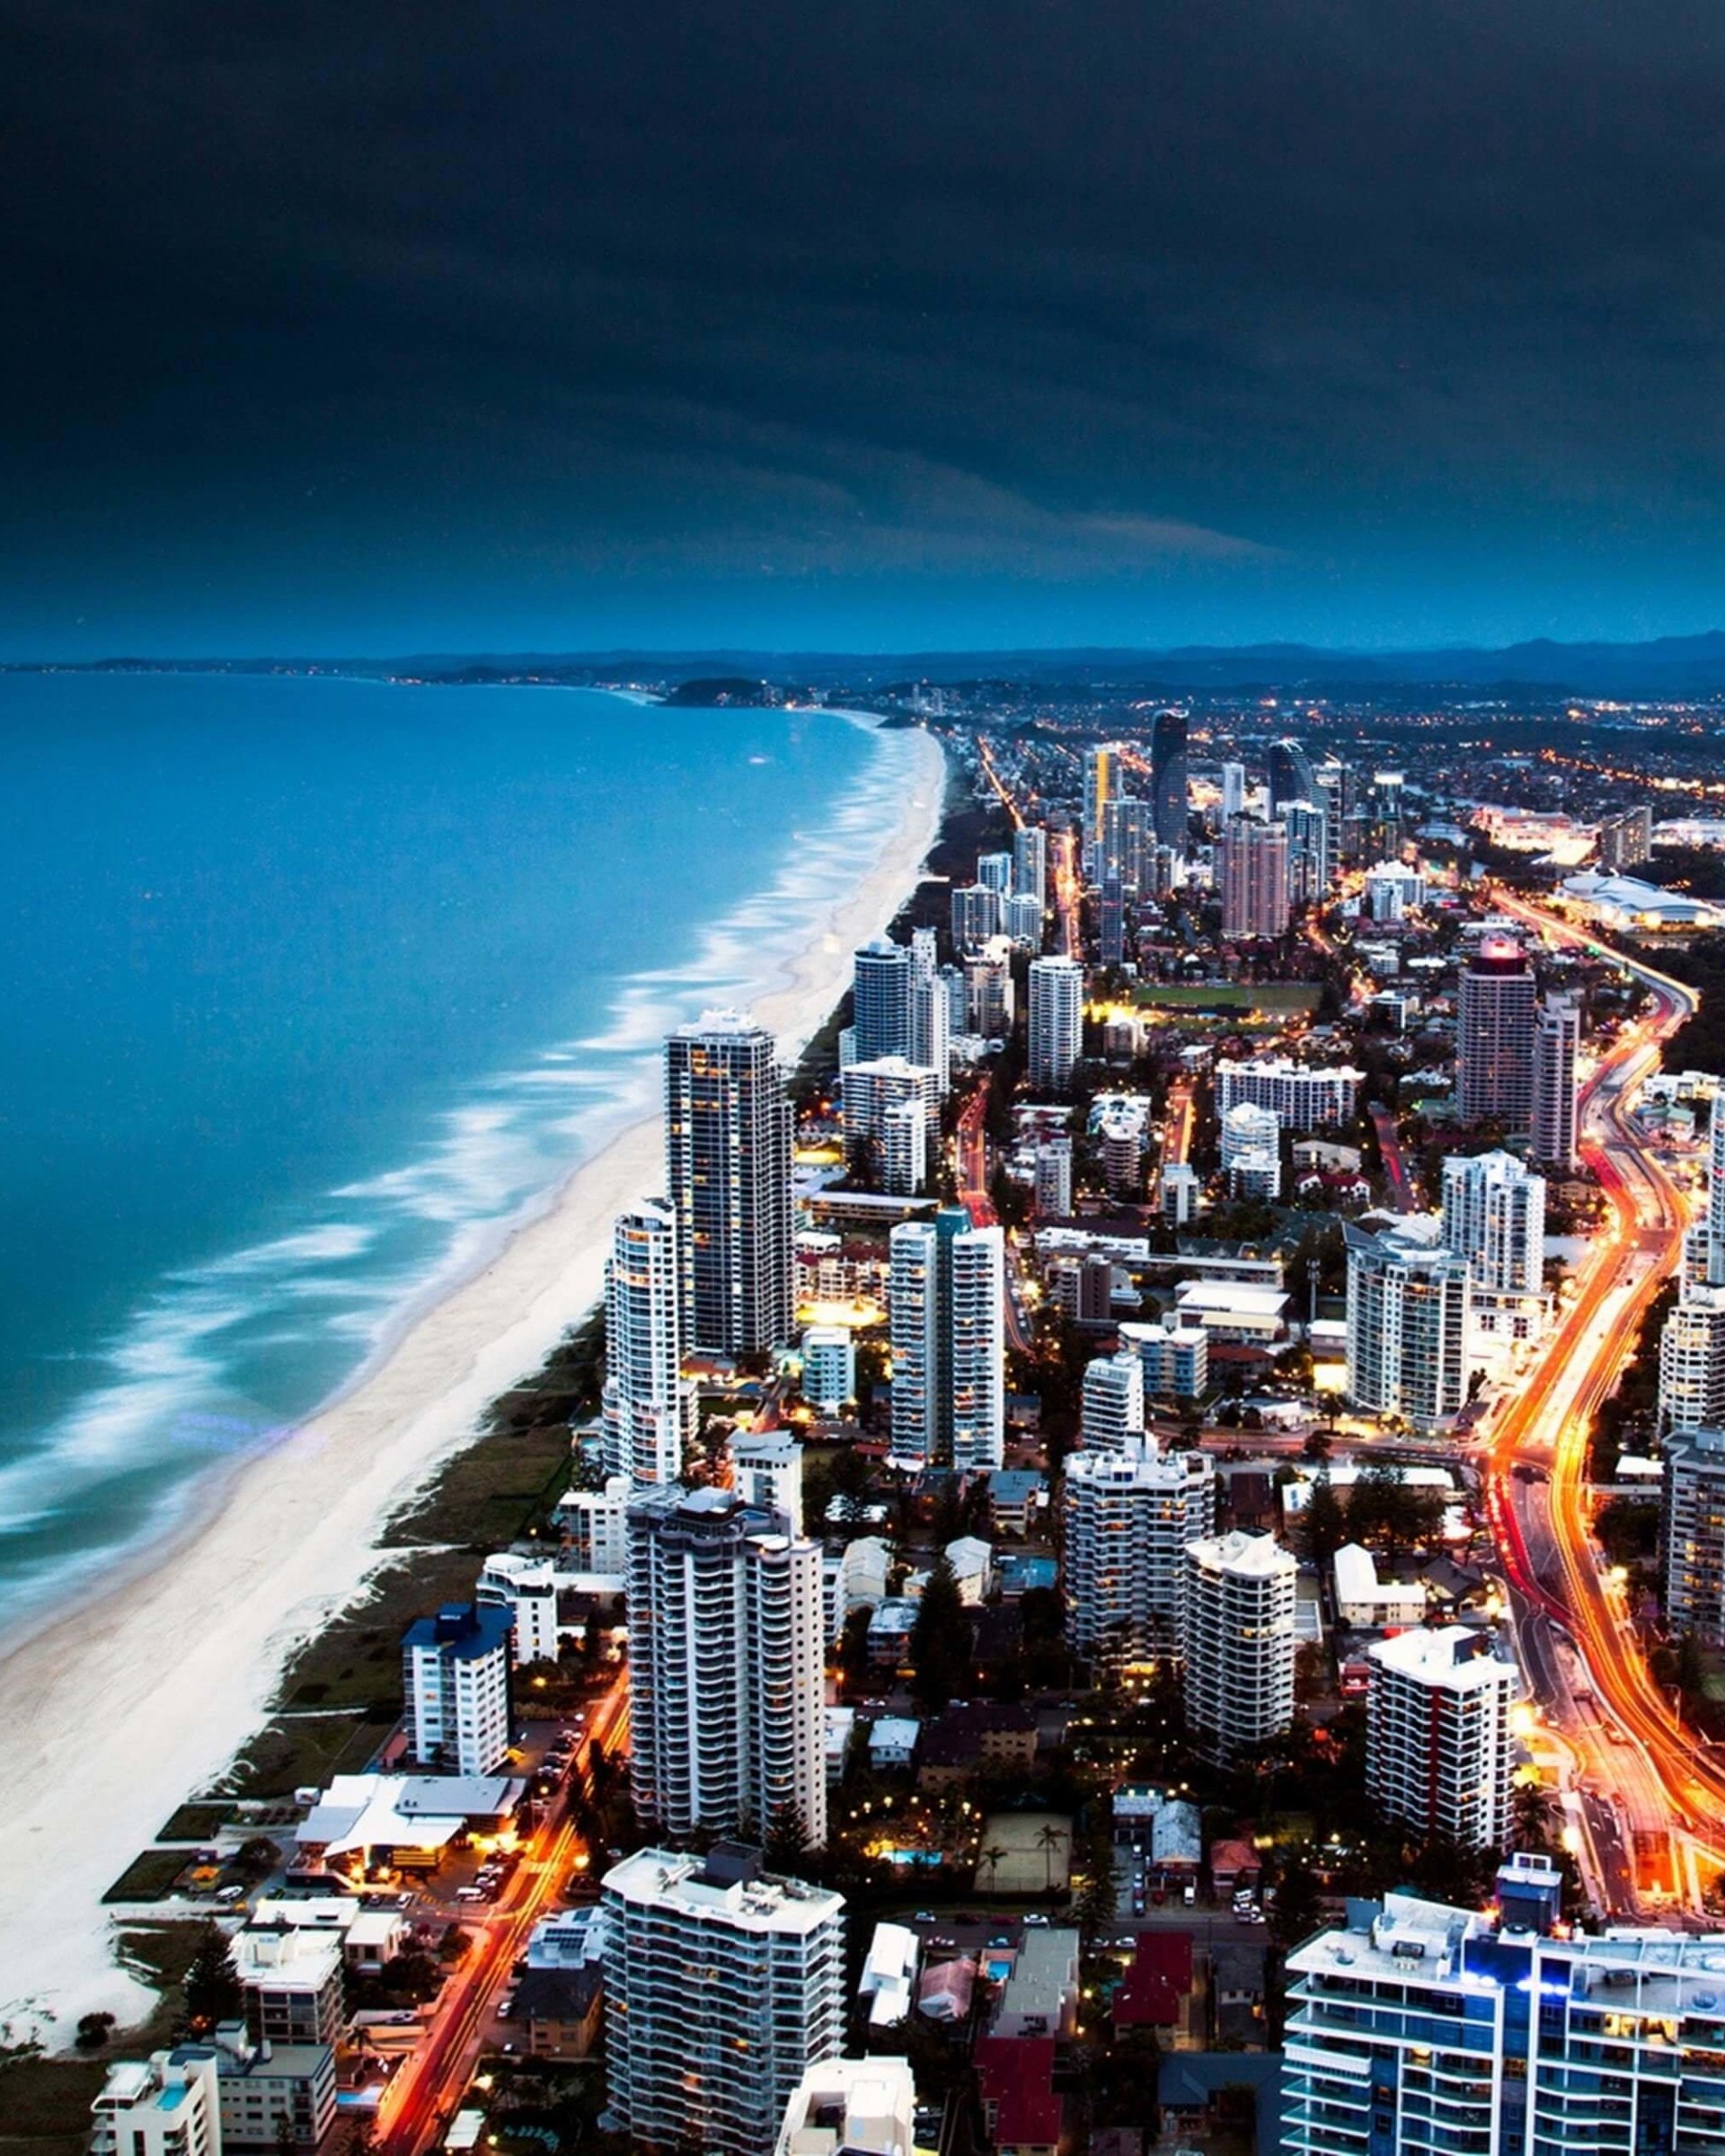 Gold Coast City in Queensland, Australia Wallpaper for Google Nexus 7